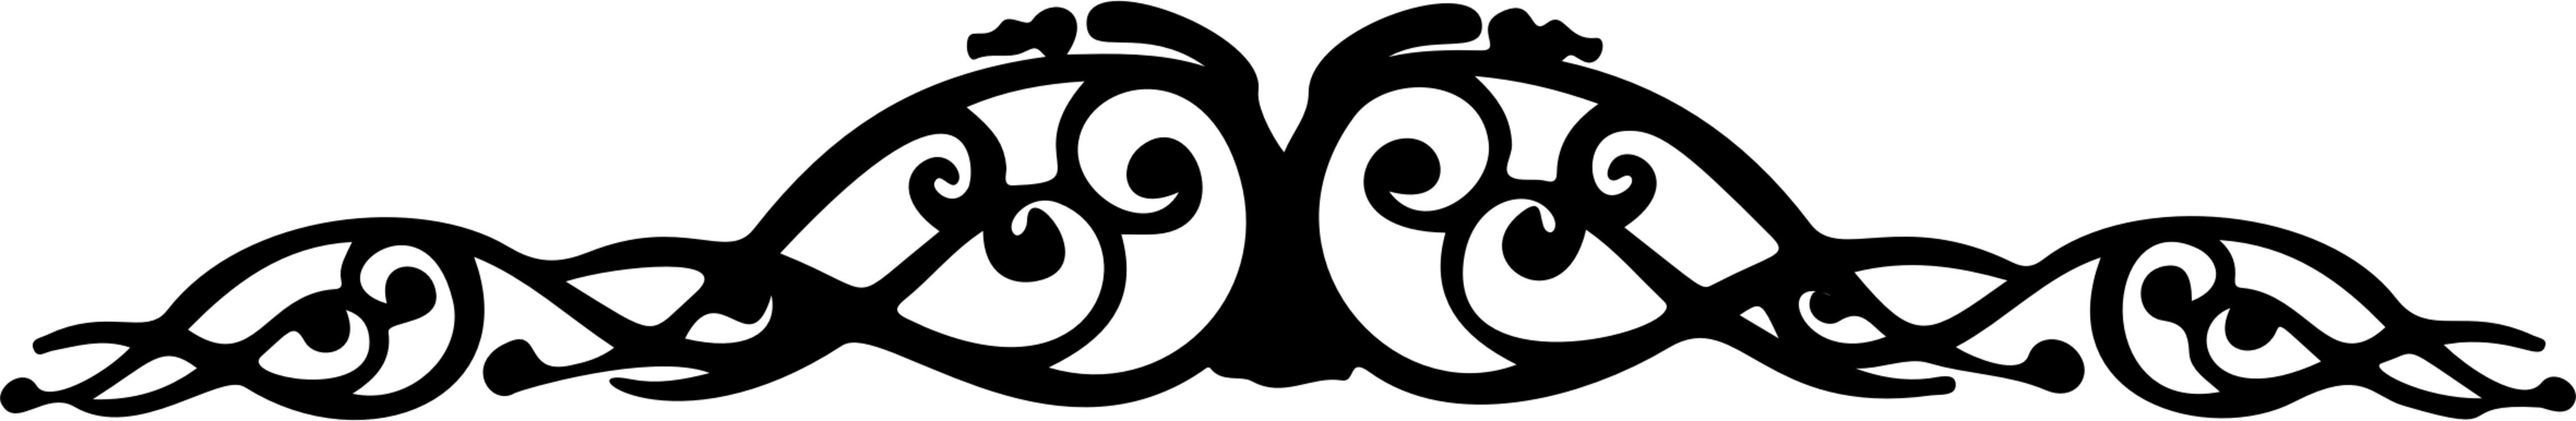 Blackandwhite,Logo,Circle